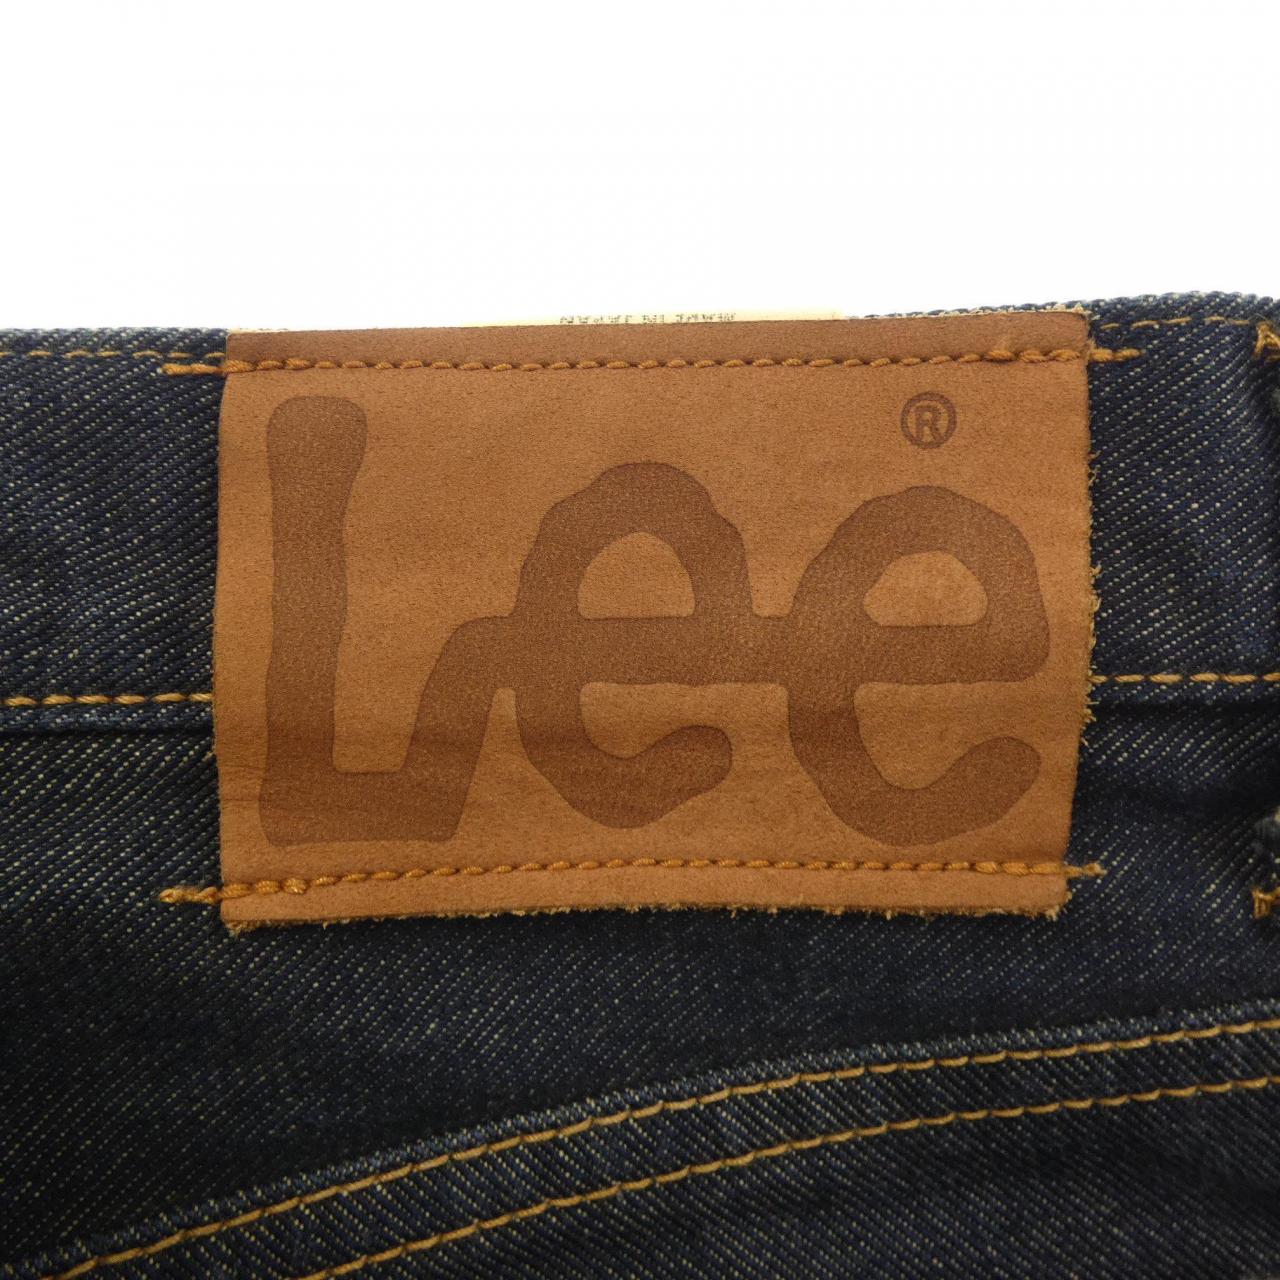 Lee LEE牛仔裤